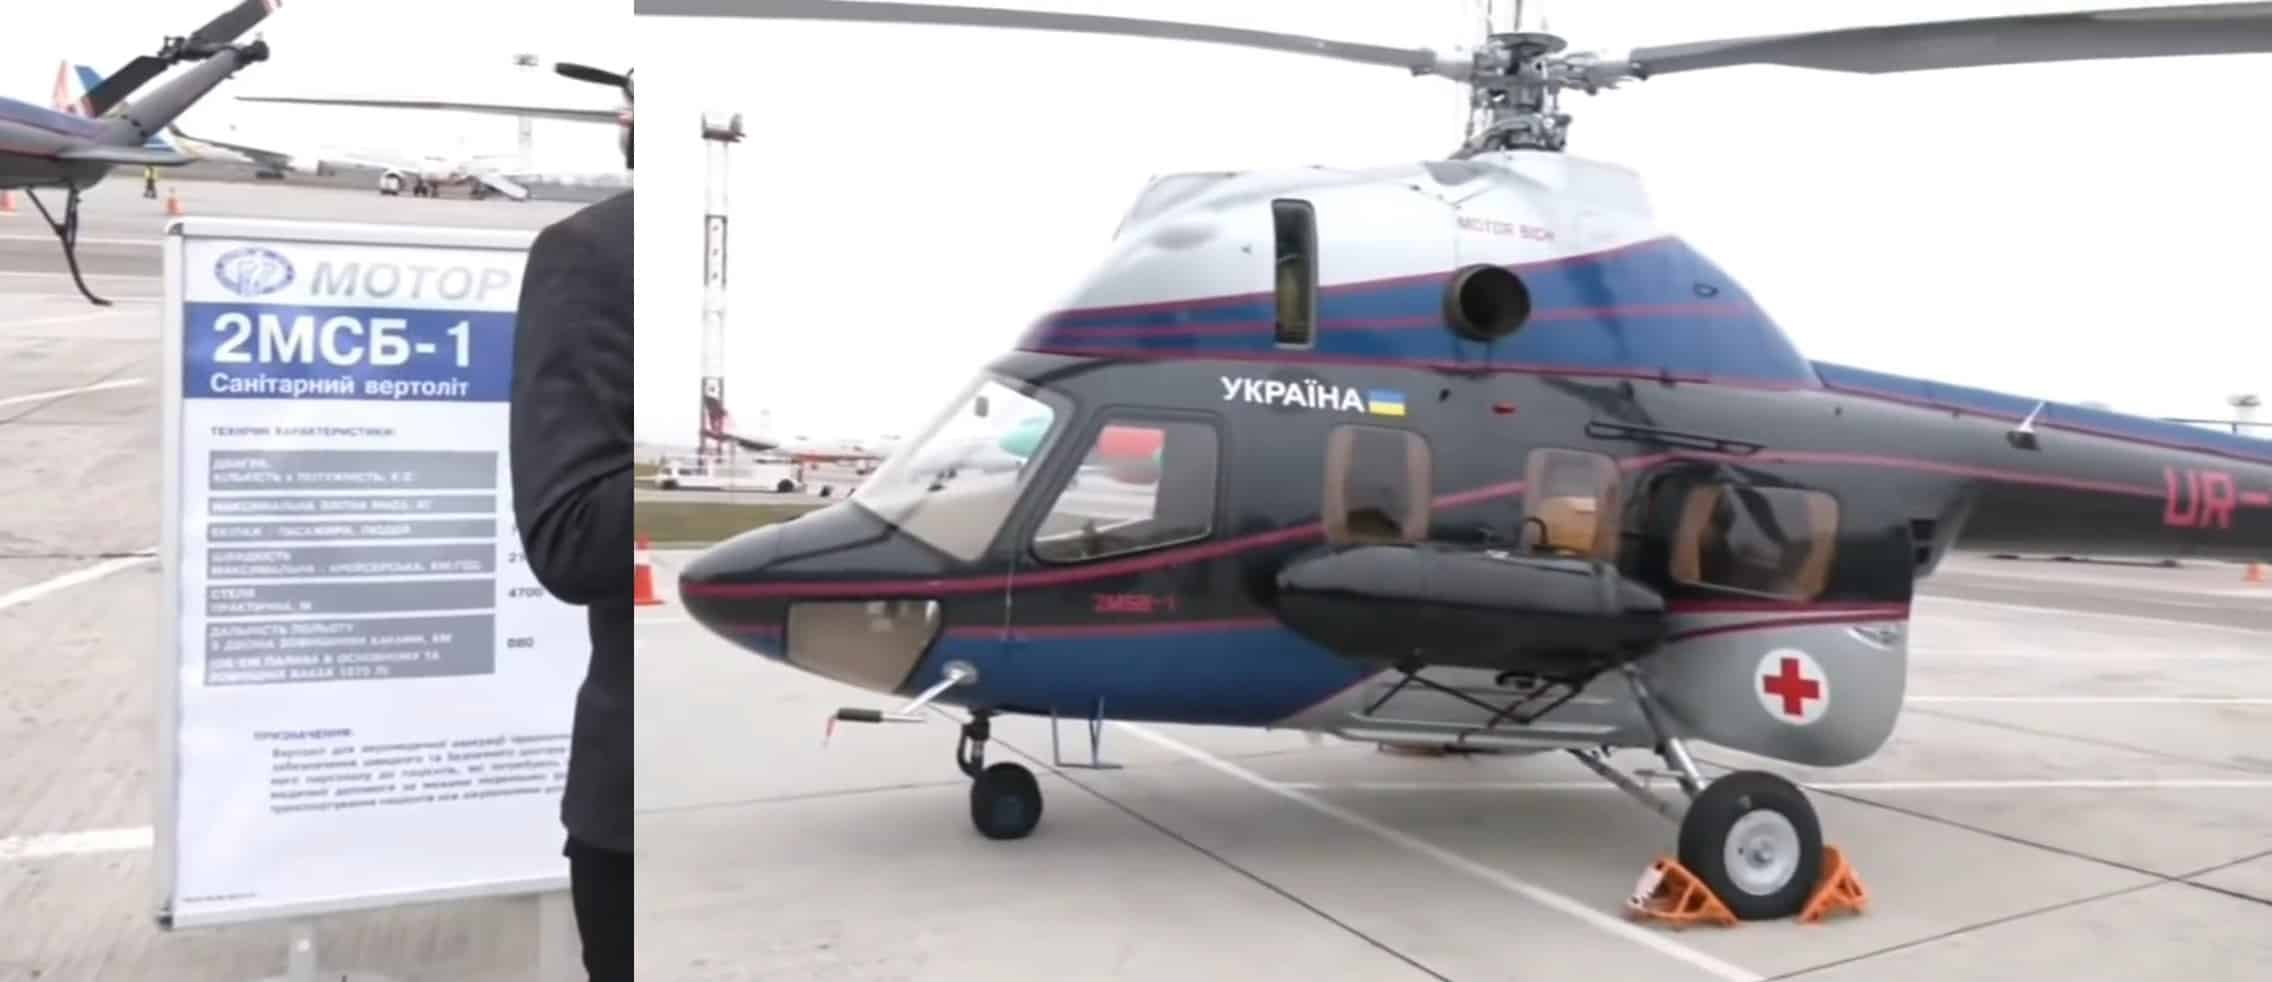 Санітарний вертоліт 2МСБ-1. Листопад 2021. Кадр з відео каналу FED